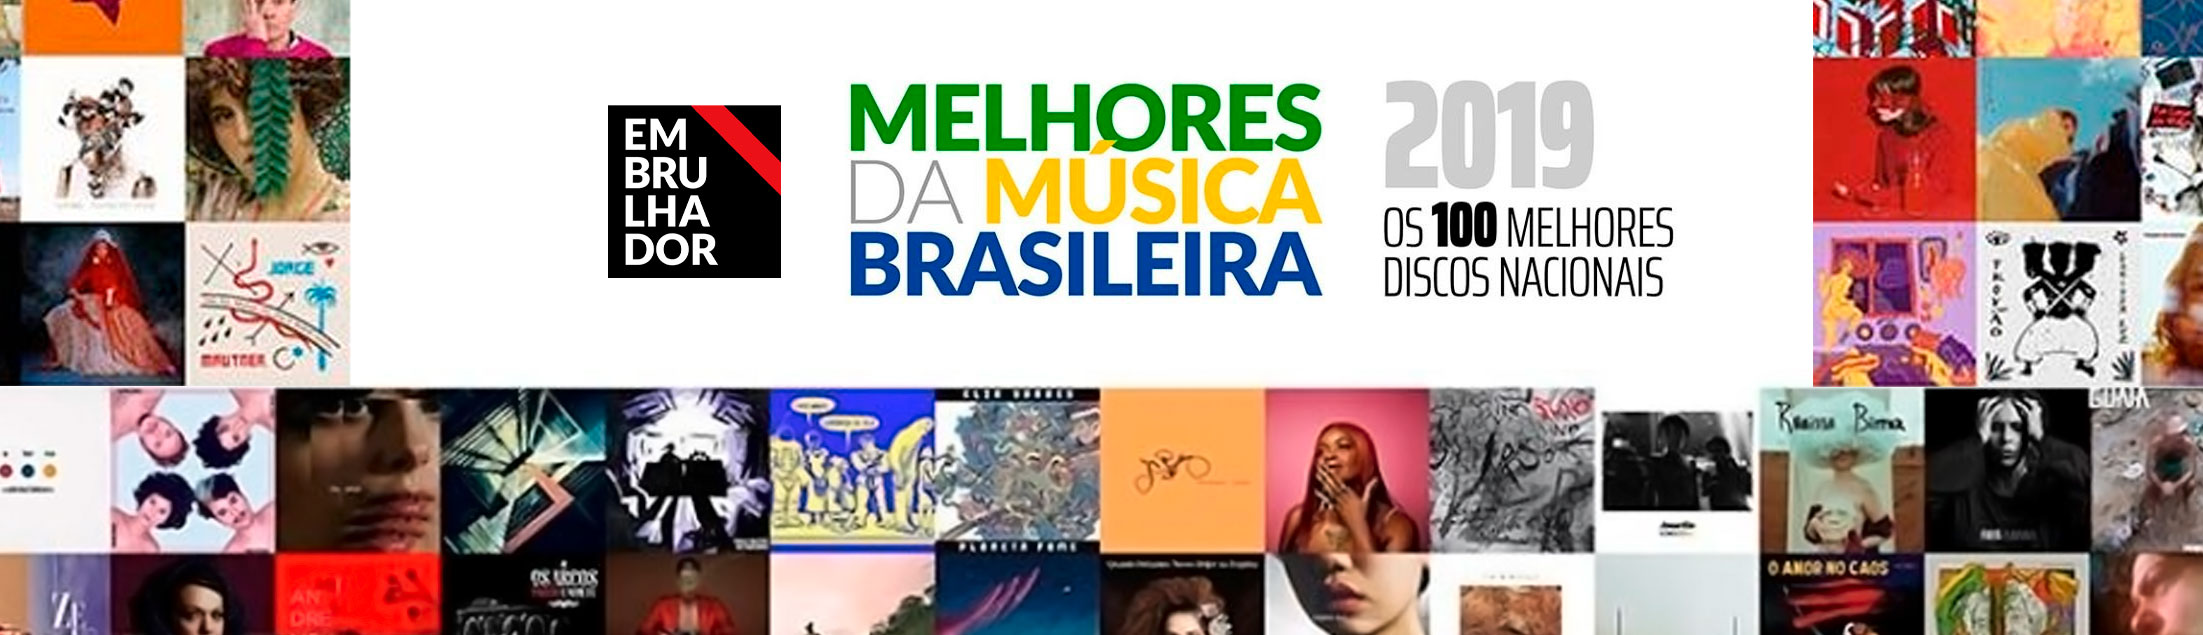 Embrulhador apresenta: Melhores da Música Brasileira 2019 por Ed Félix